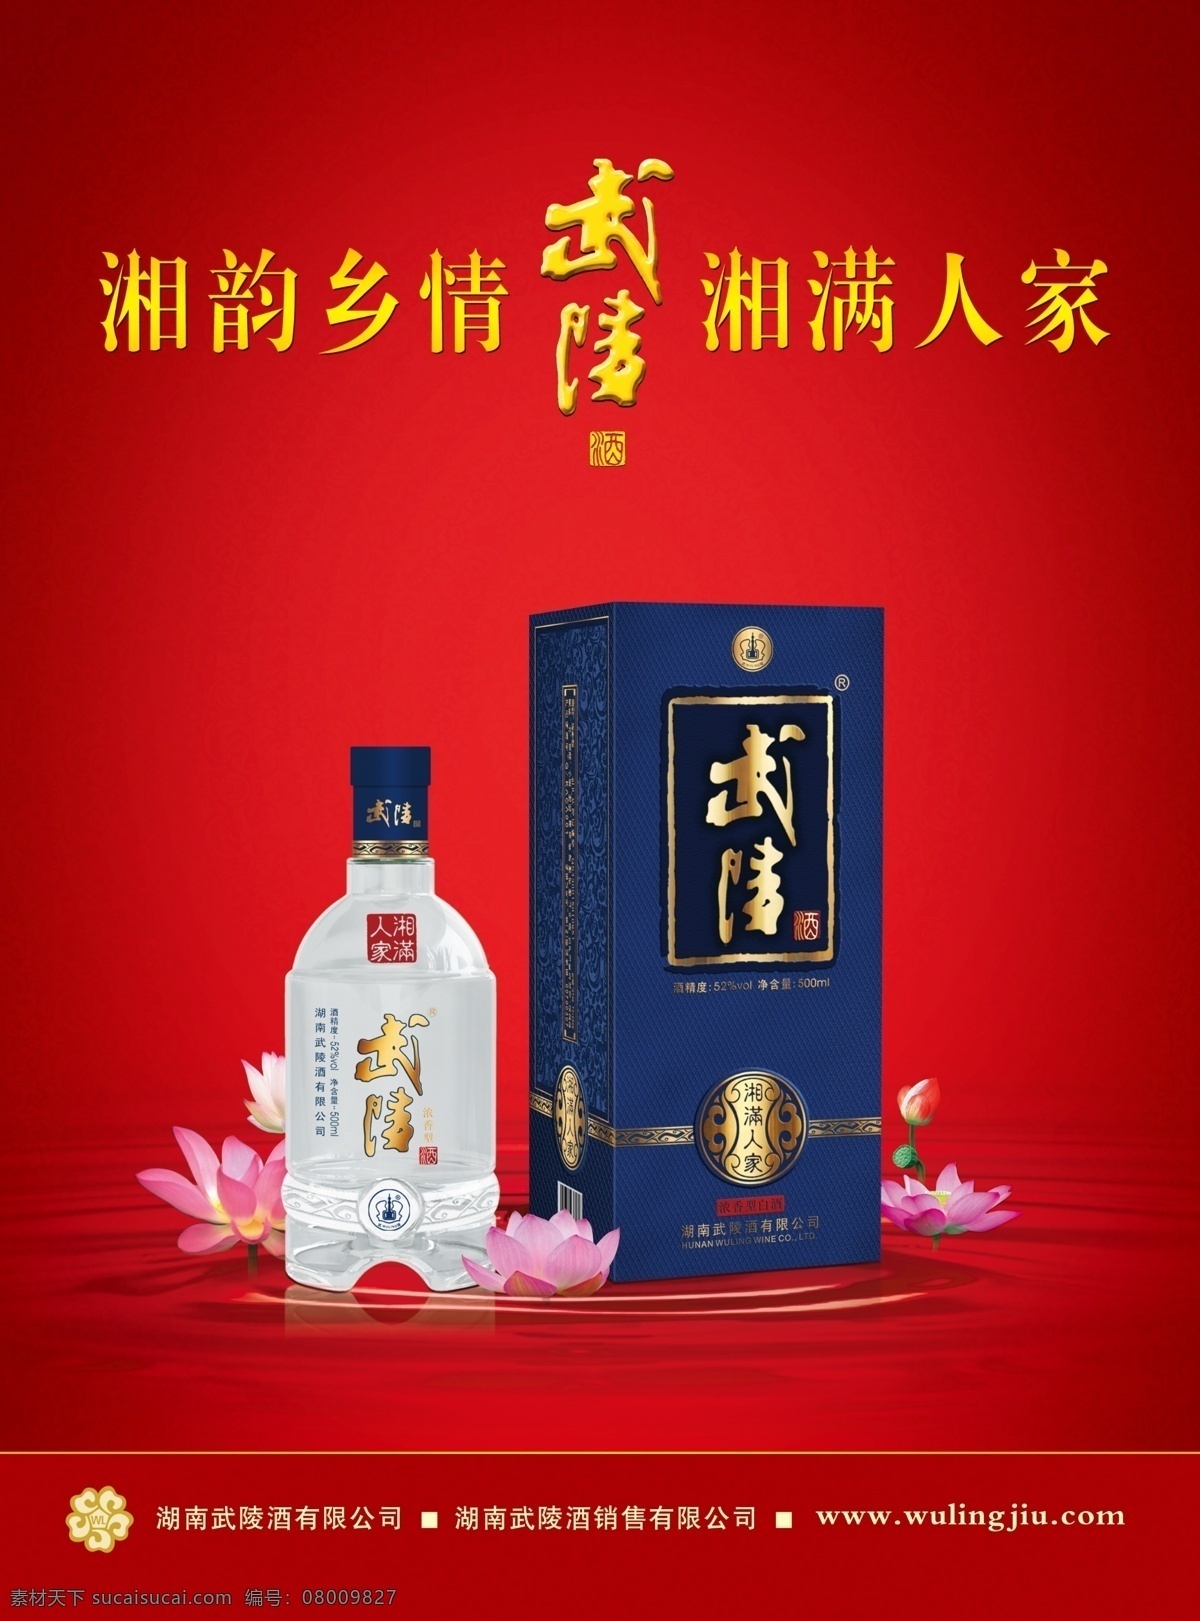 武陵酒广告 湘满人家 荷花 芙蓉国色酒 白酒海报 广告设计模板 源文件